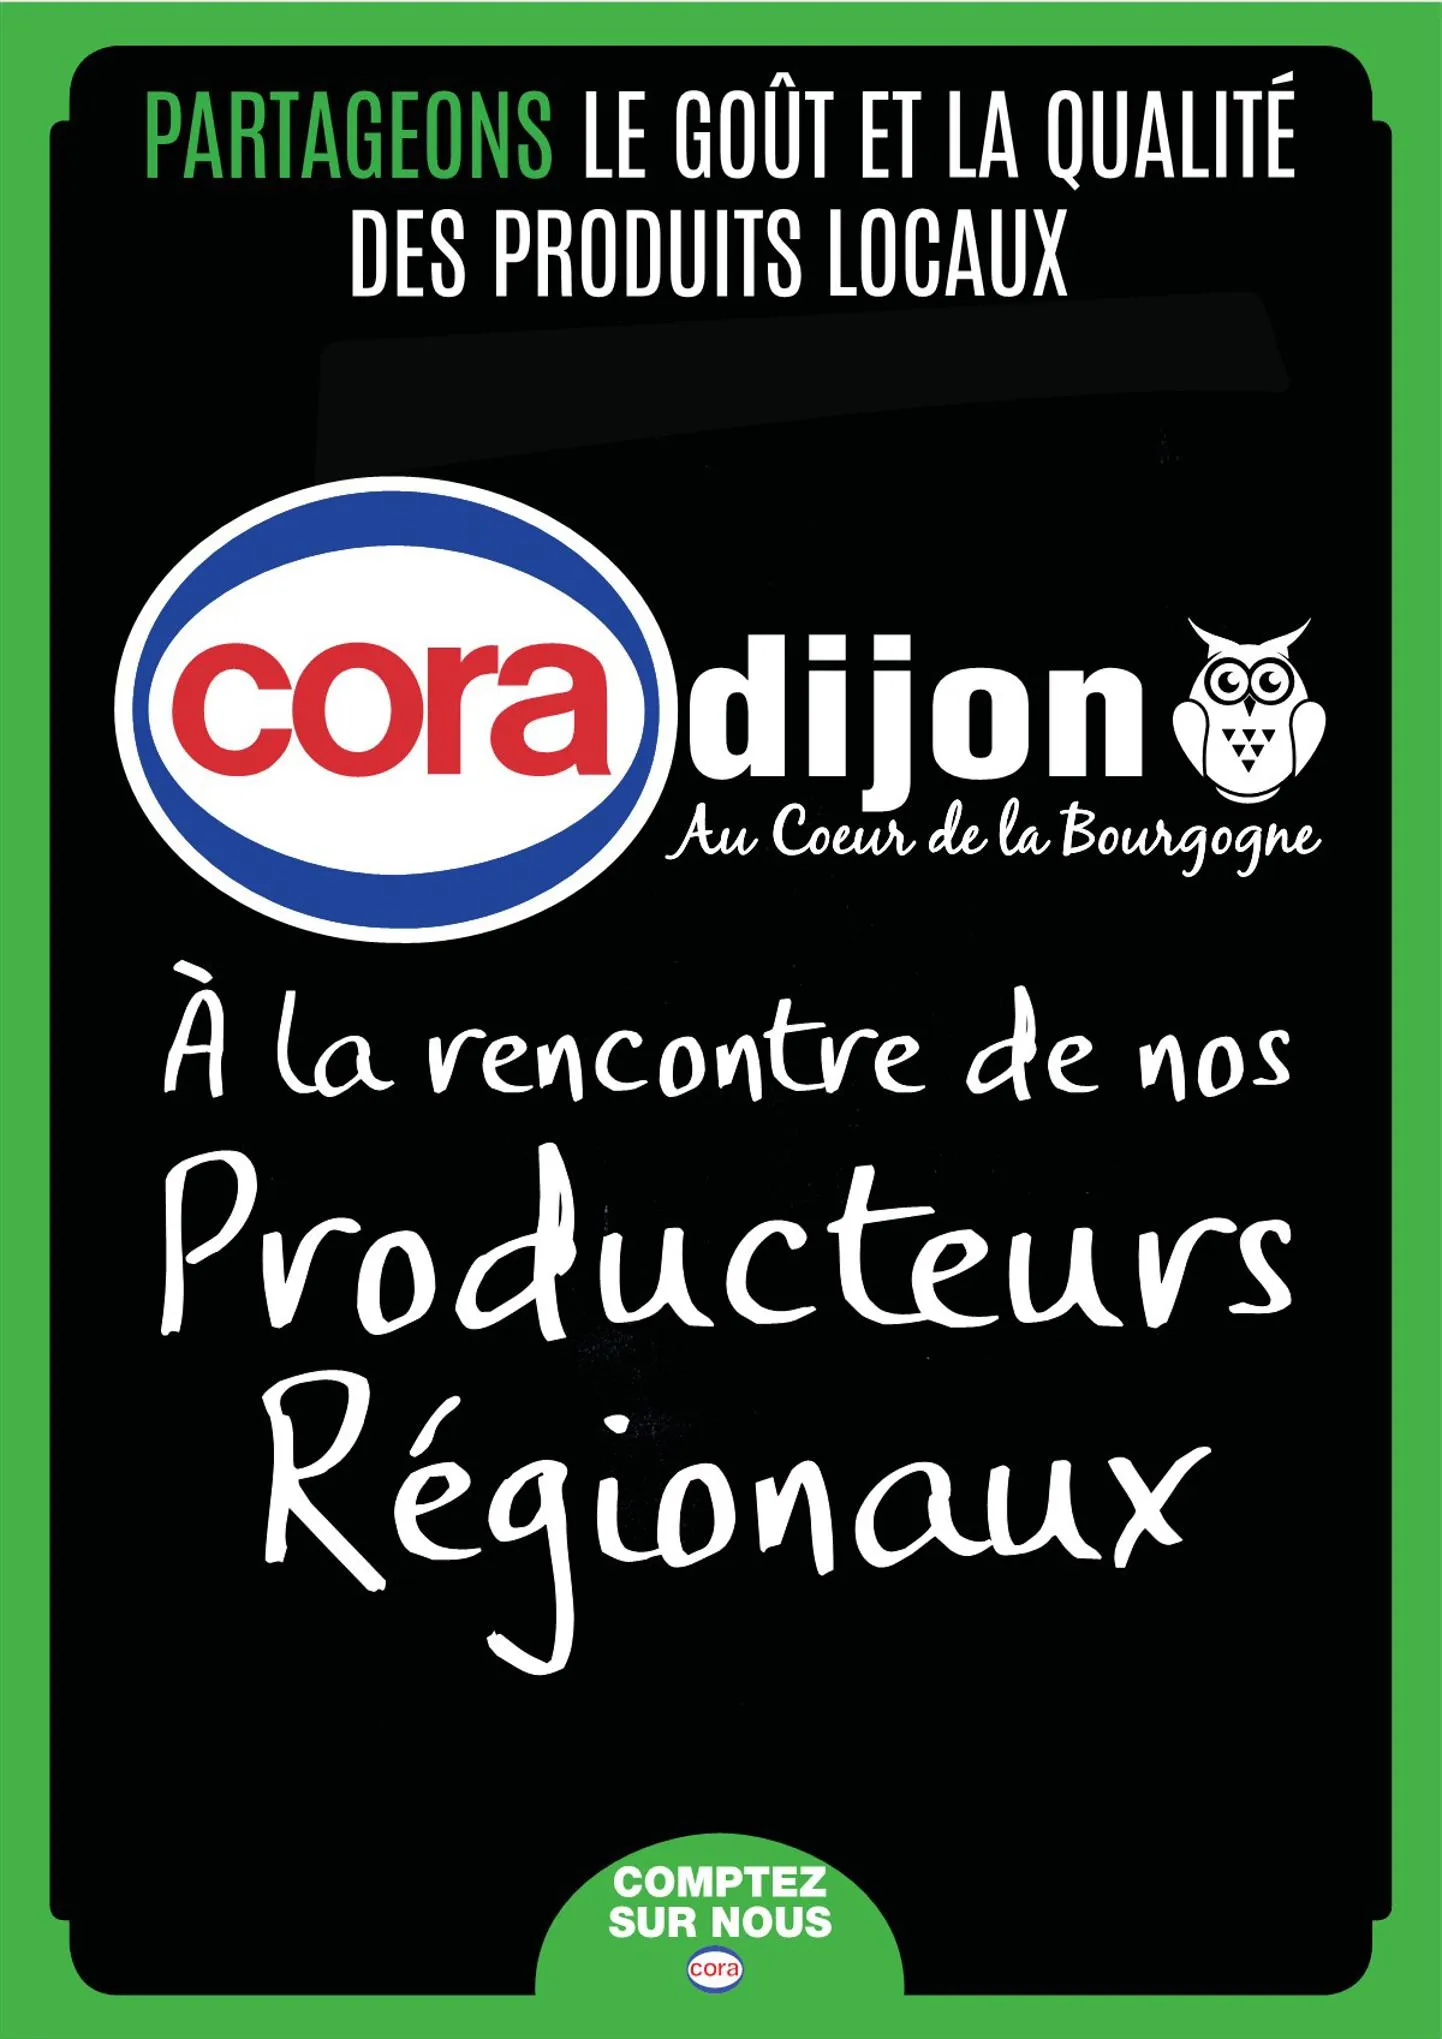 Catalogue Producteurs régionaux, page 00001